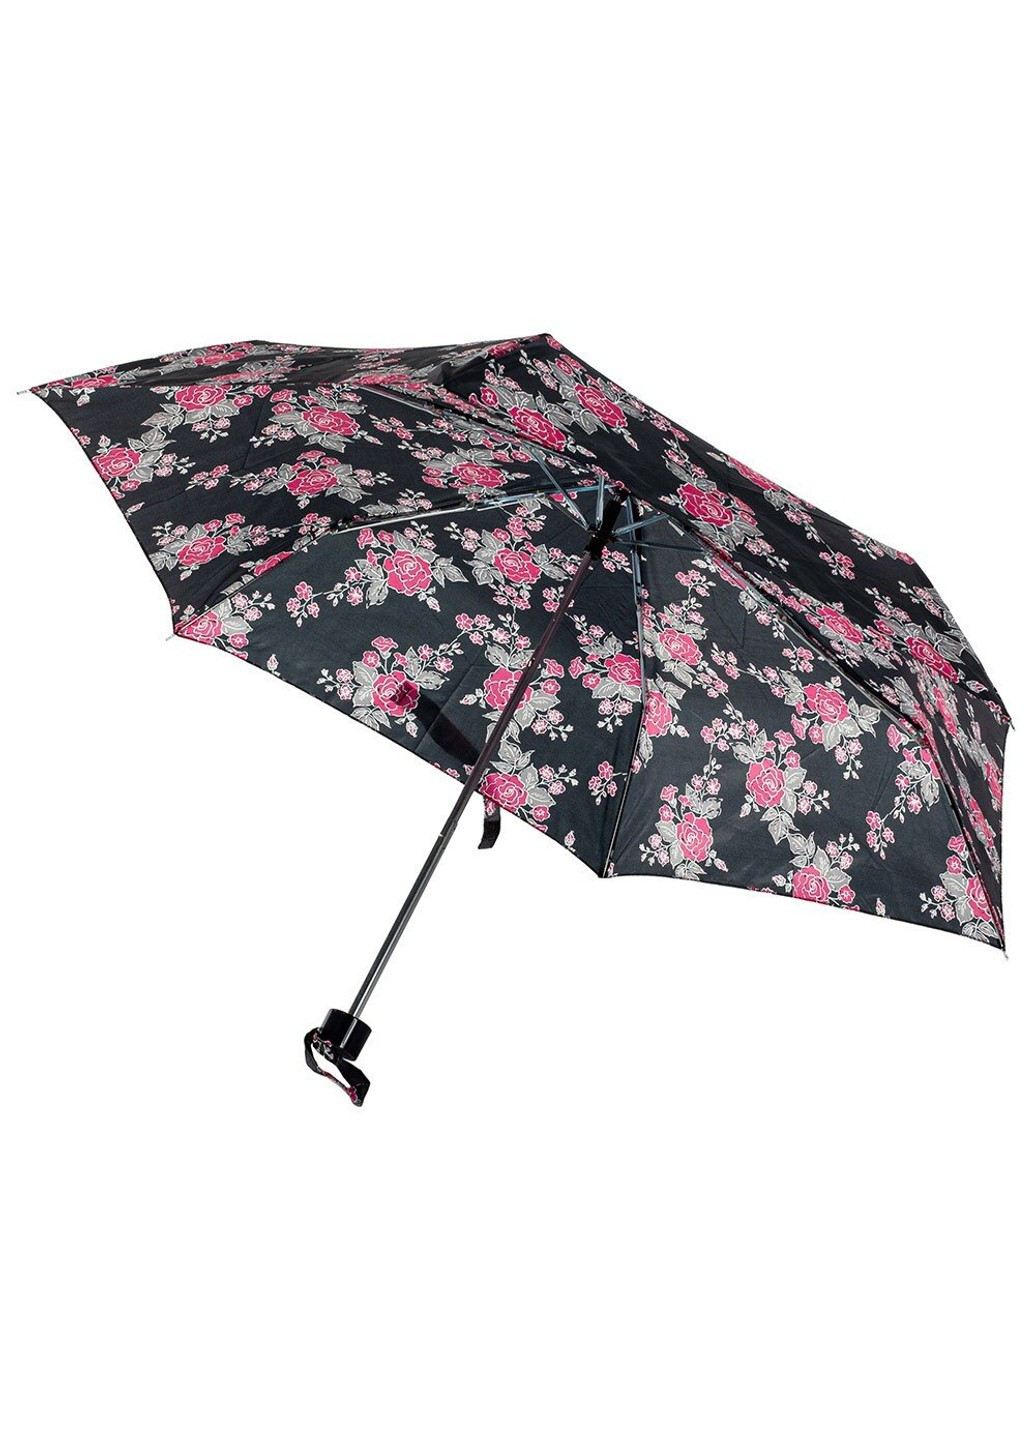 Механический женский зонт -4 L412 Floral Sprig (Цветочная ветка) Incognito (262086961)